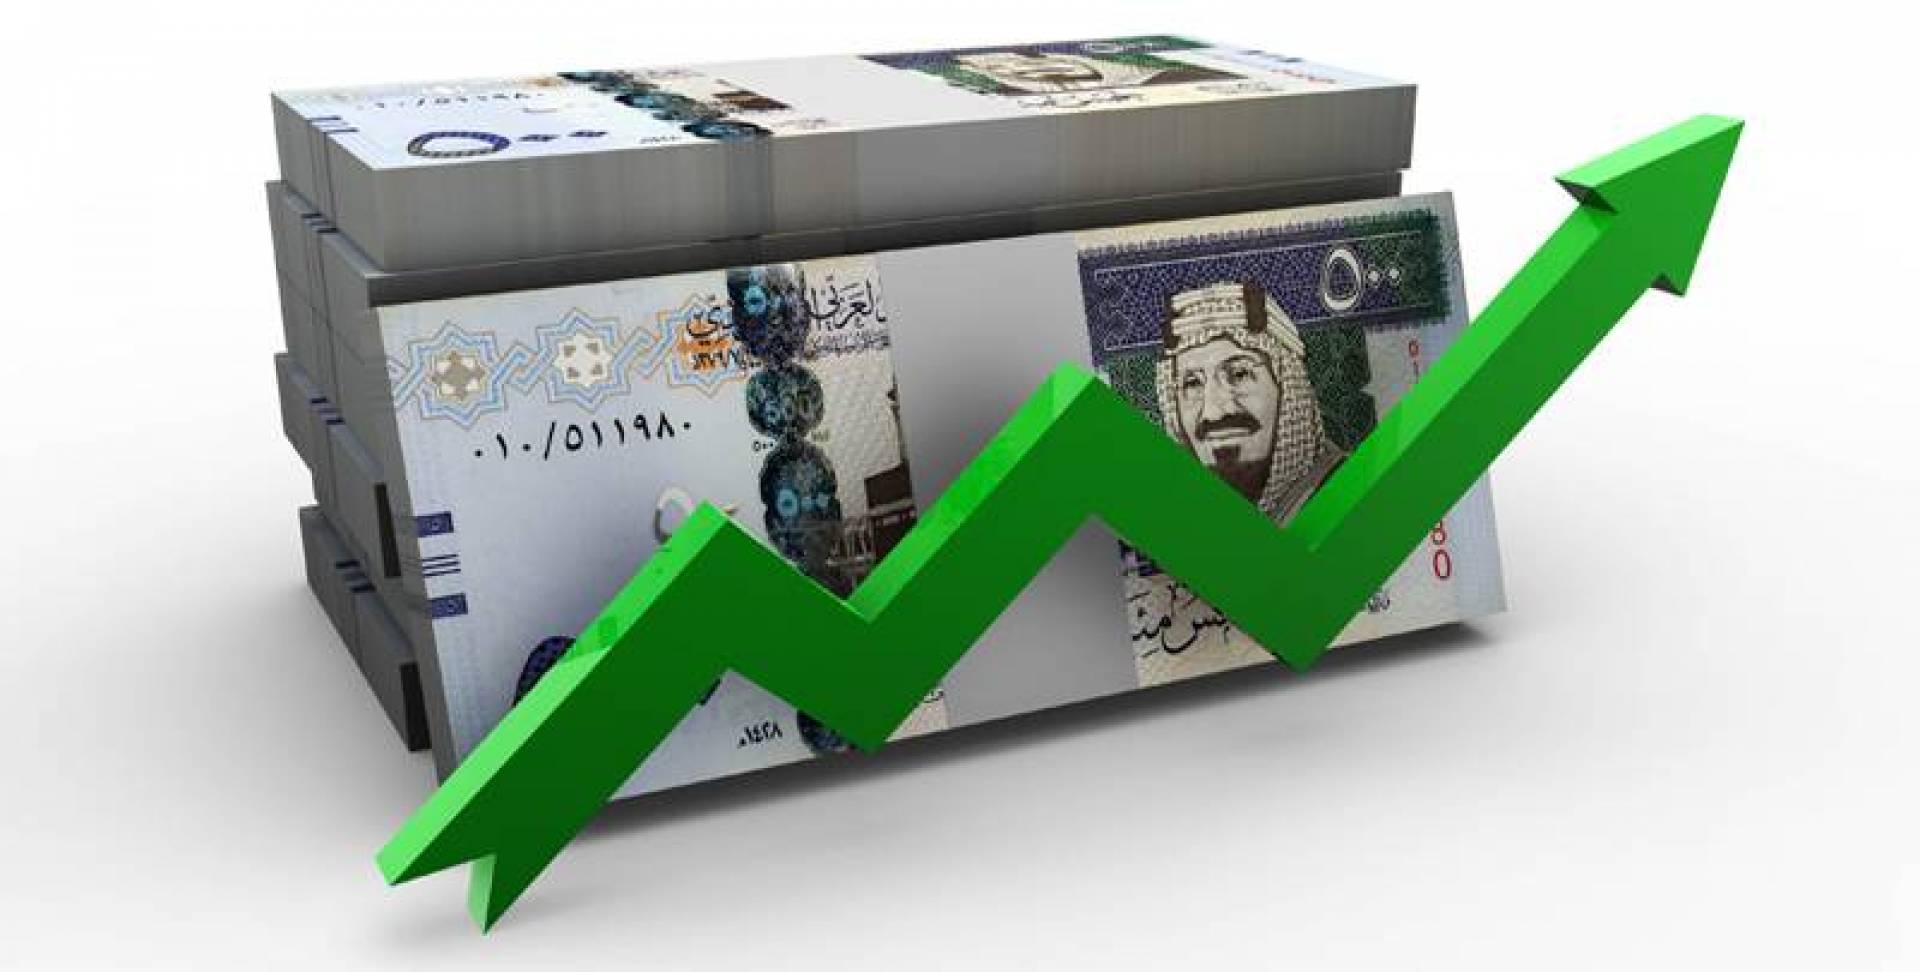 الاقتصاد السعودي